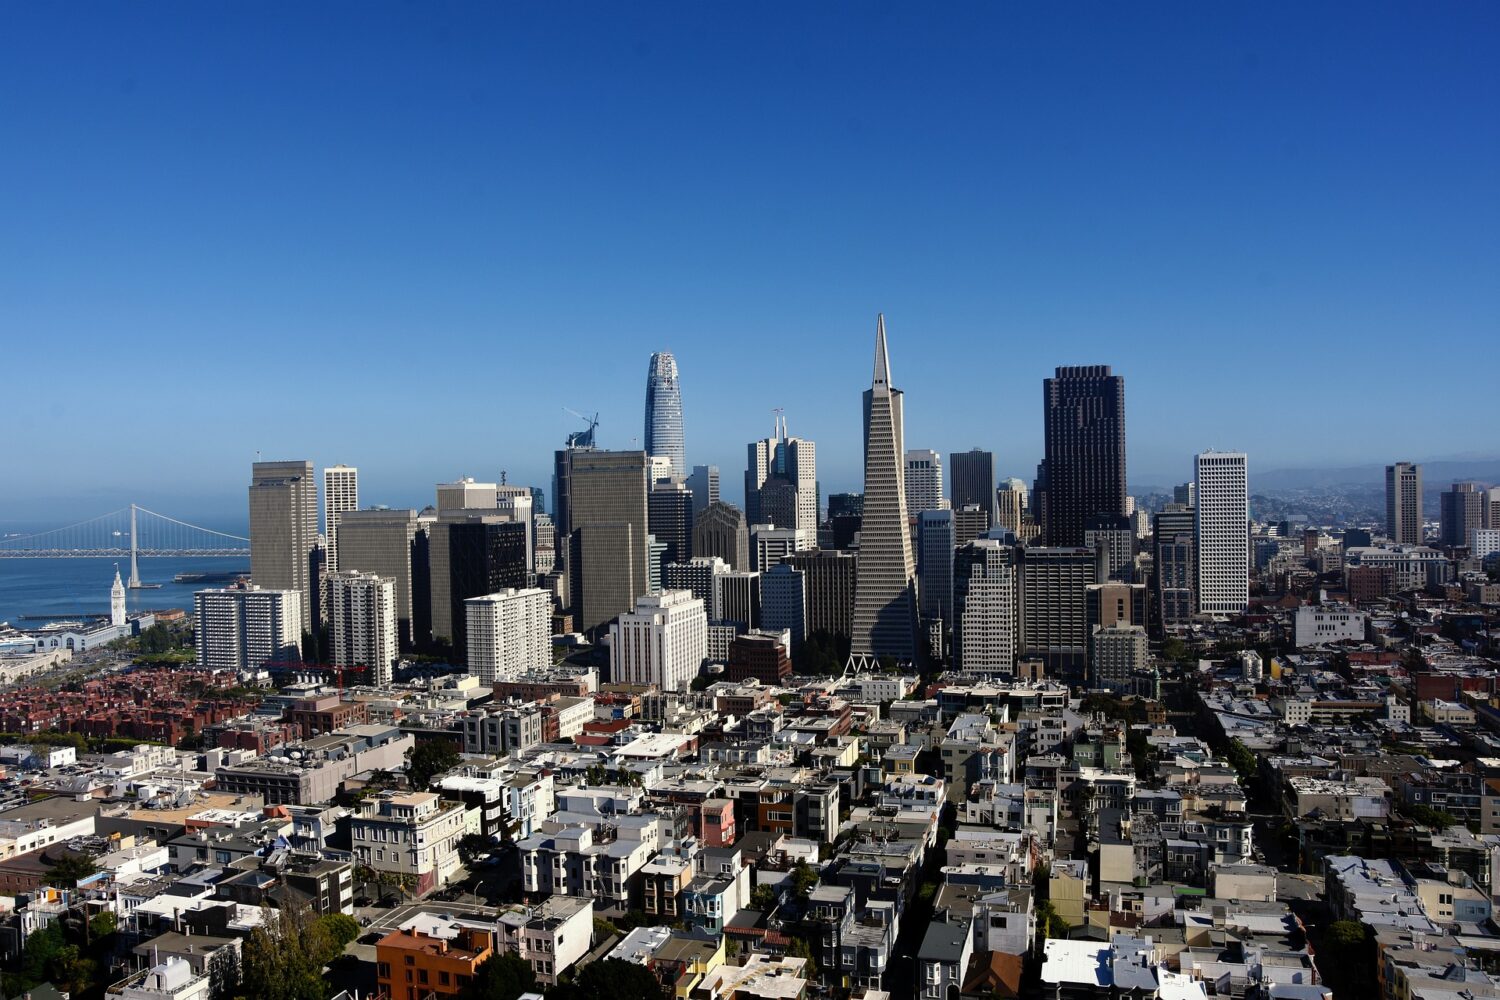 San Francisco skyline on a clear blue sky day